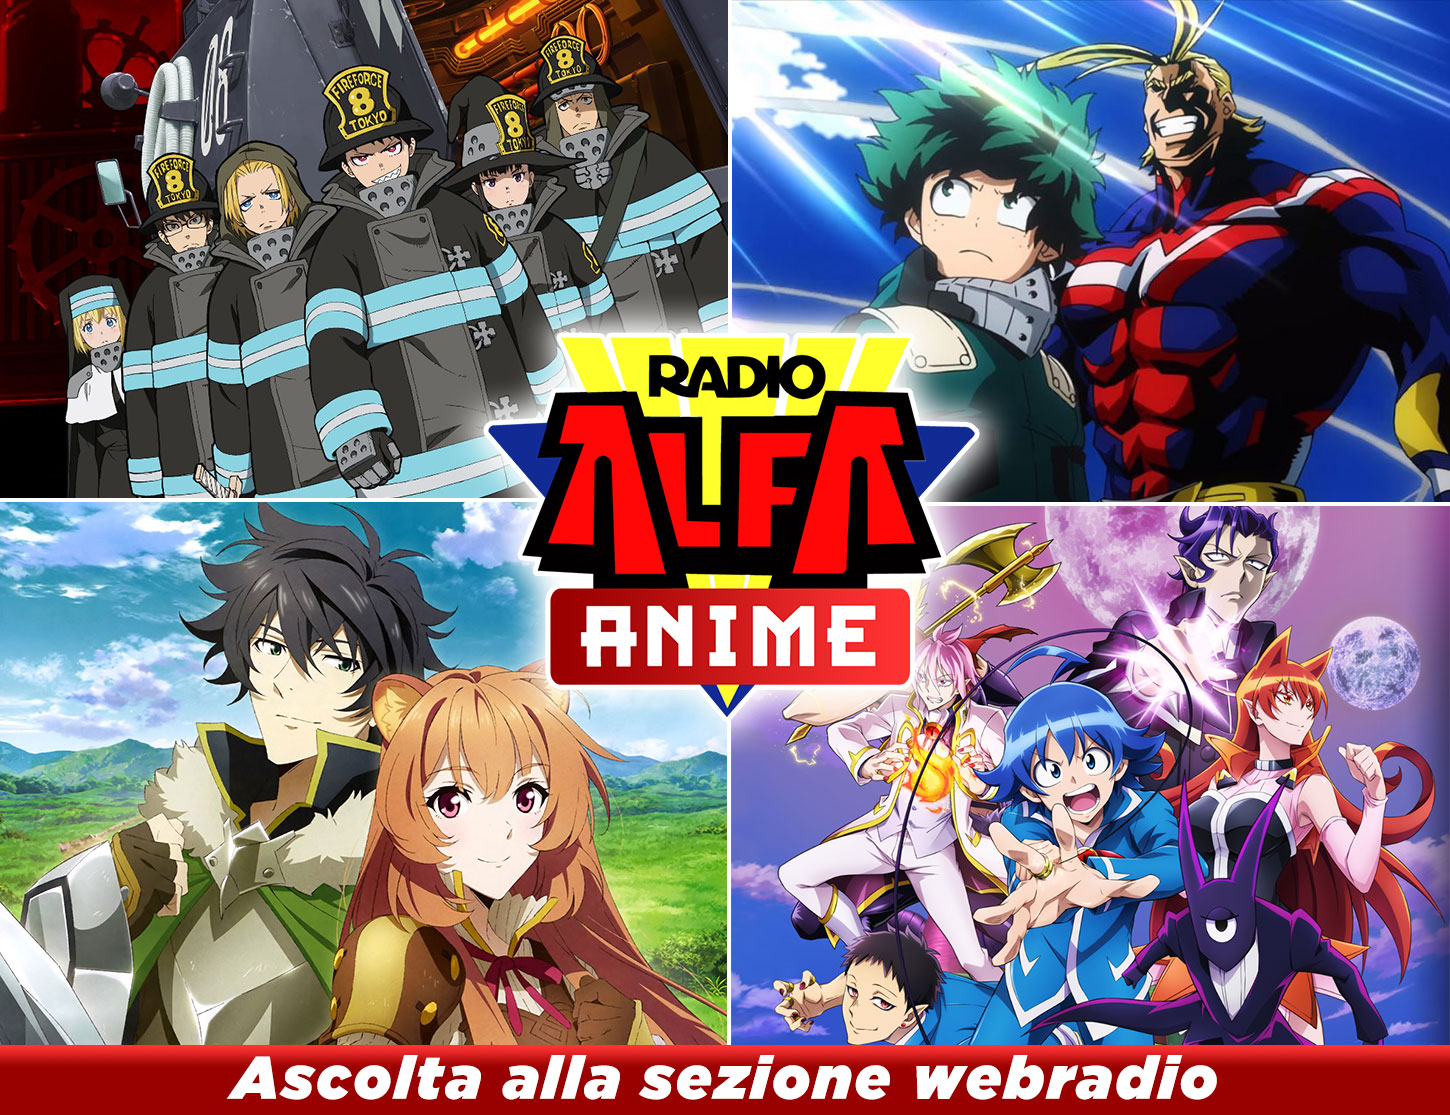 Radio Alfa Anime - Ascolta alla sezione webradio